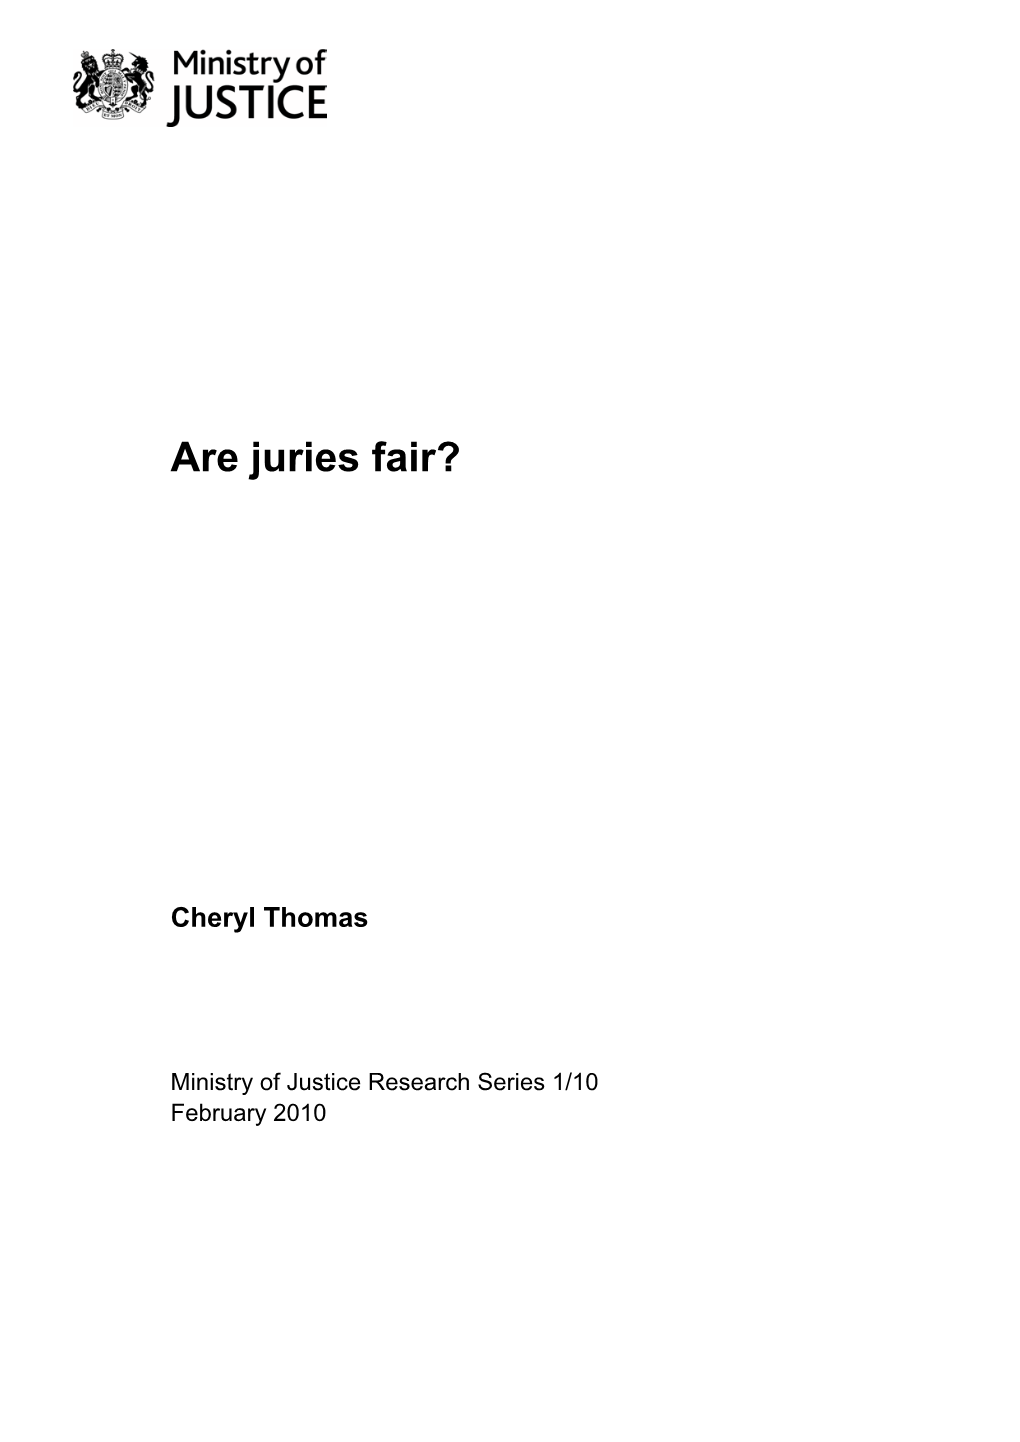 Are Juries Fair?